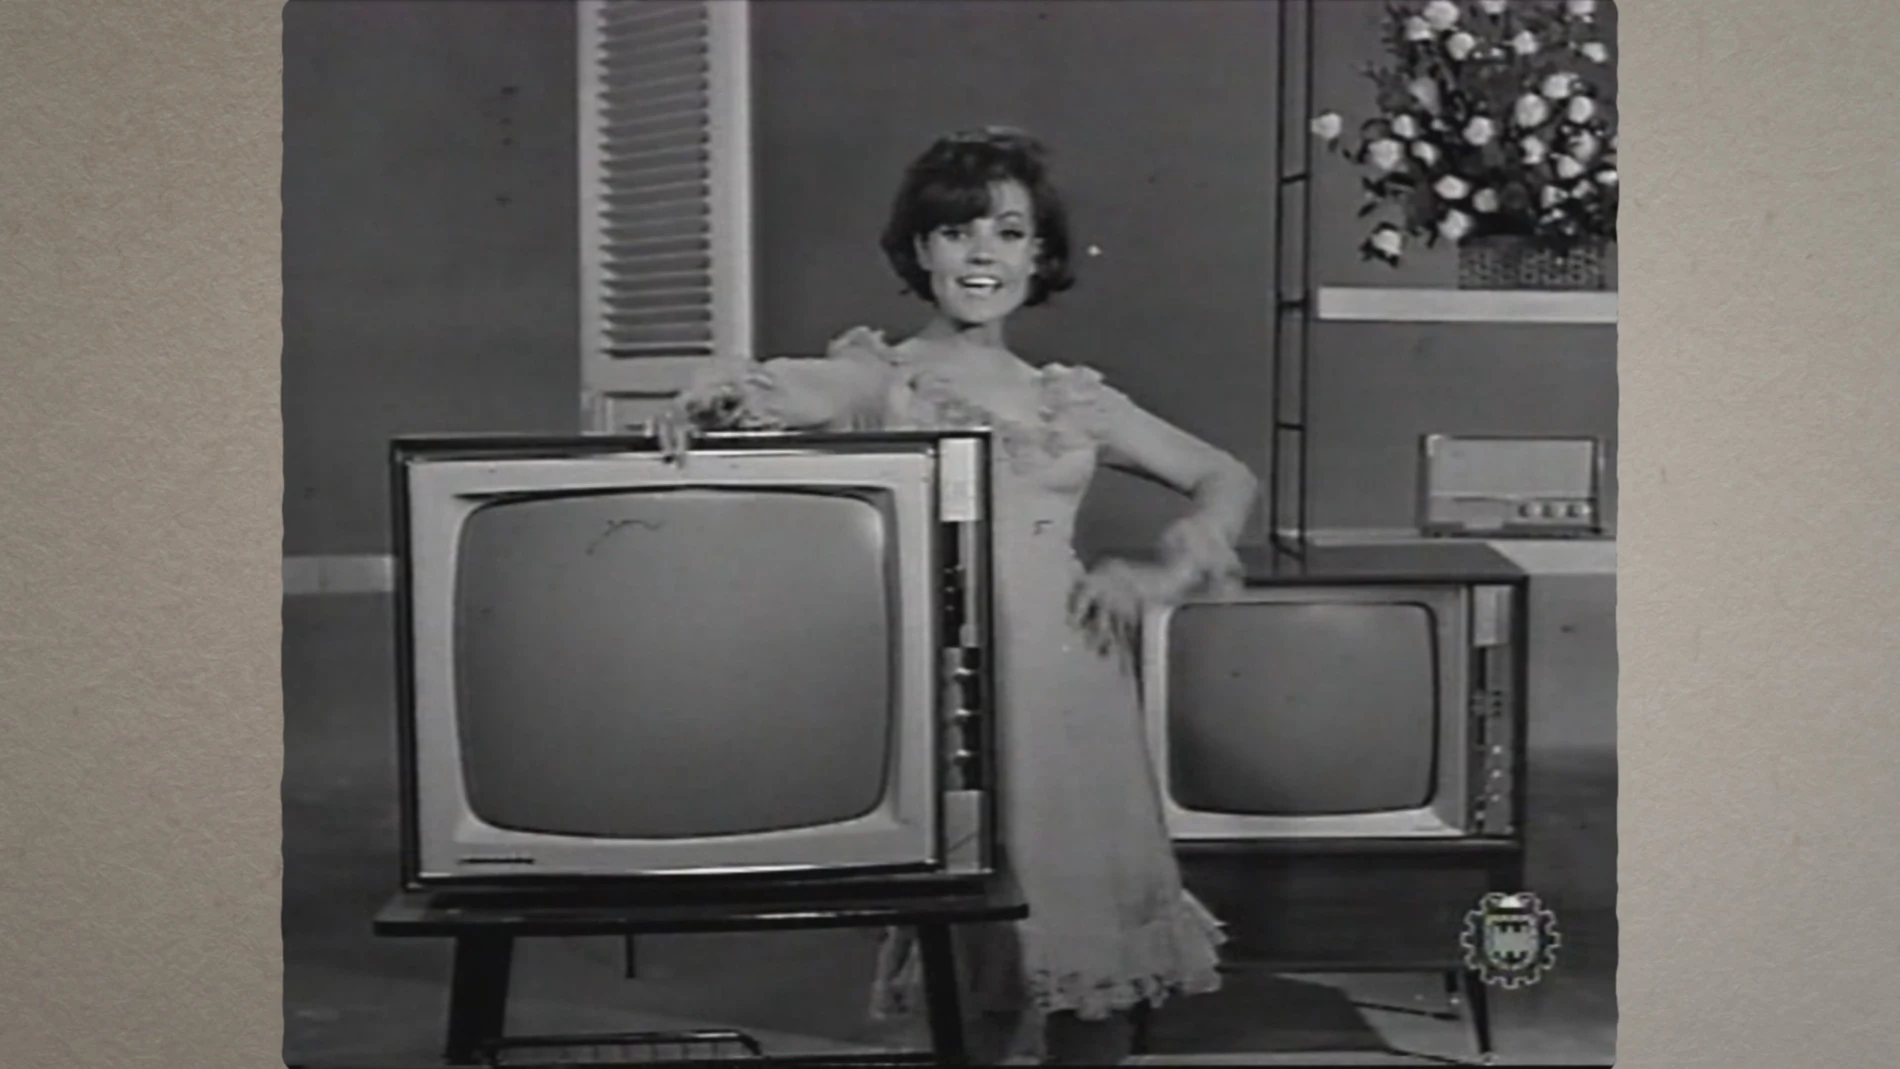 La televisión, el aparato que causó furor en los 60